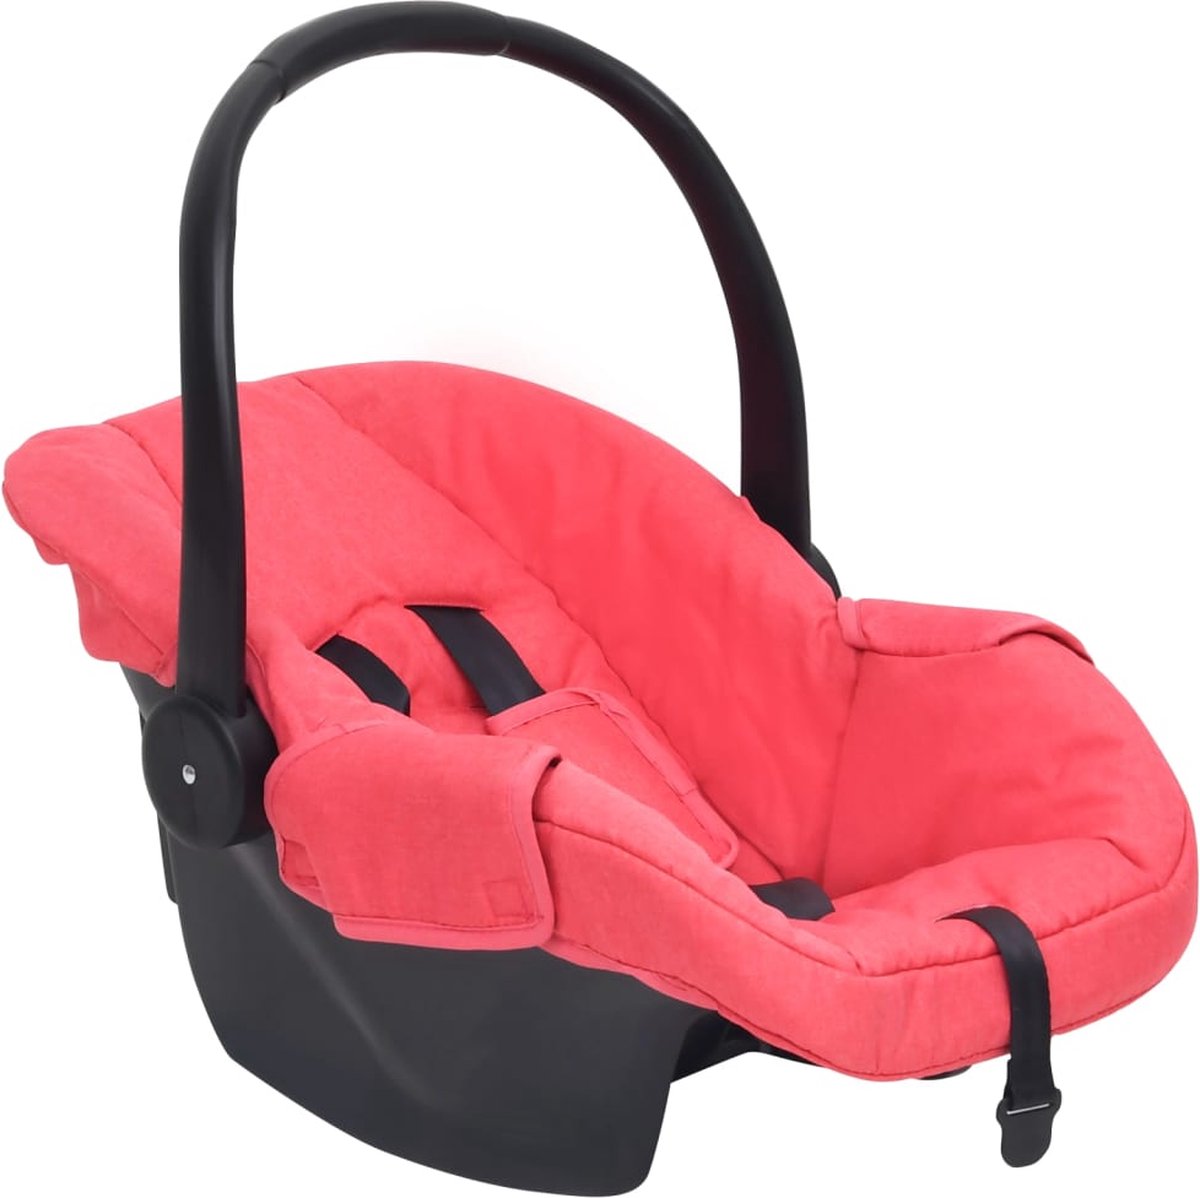 Beroli - Babyautostoel - 42x65x57 cm - Rood - Veilige en Comfortabele Autostoel voor Baby's